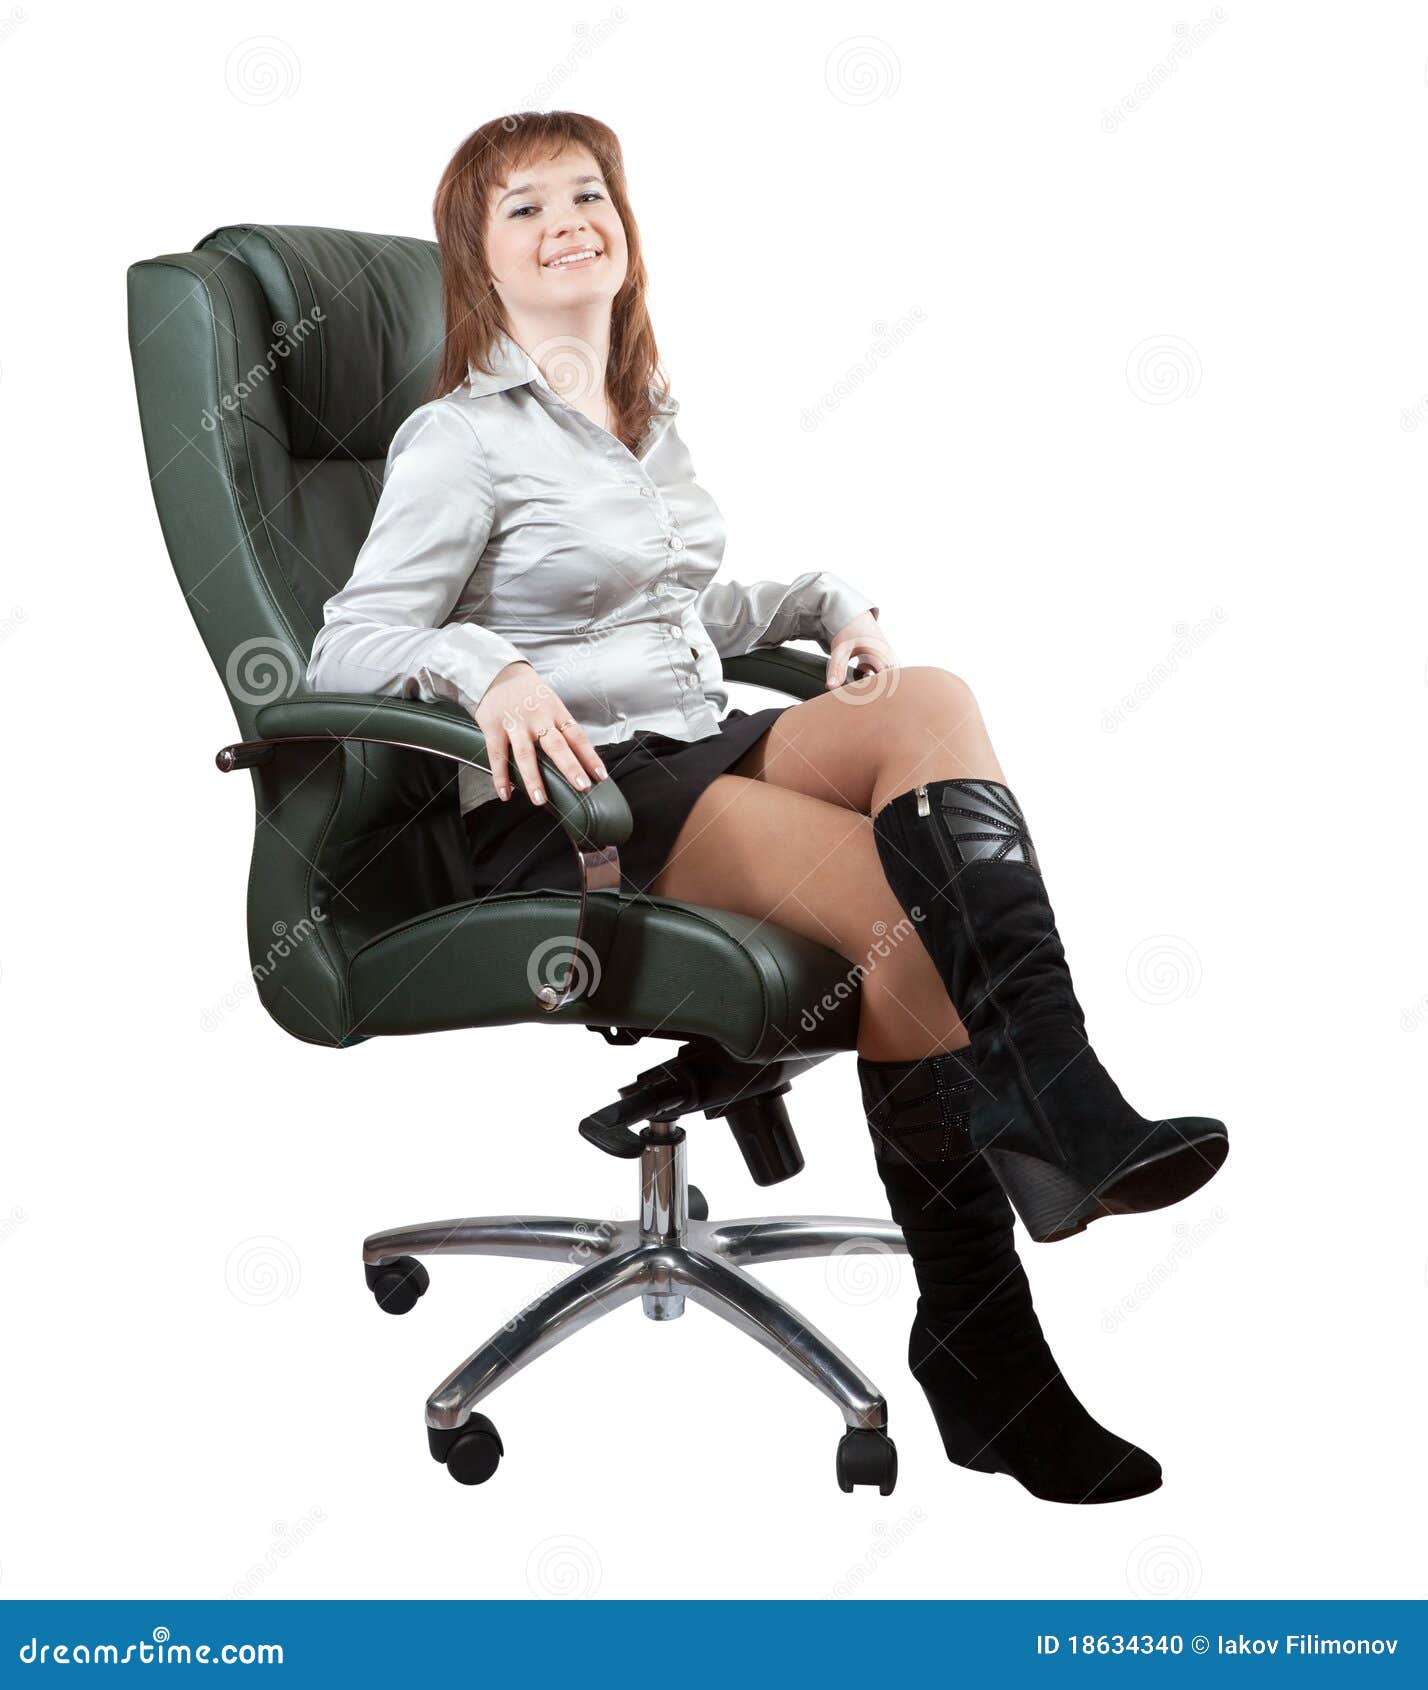 Ноги в юбке сидя. Женщина сидит в кресле. Женщина на стуле. Взрослая женщина в кресле. Женщина сидит в офисе.